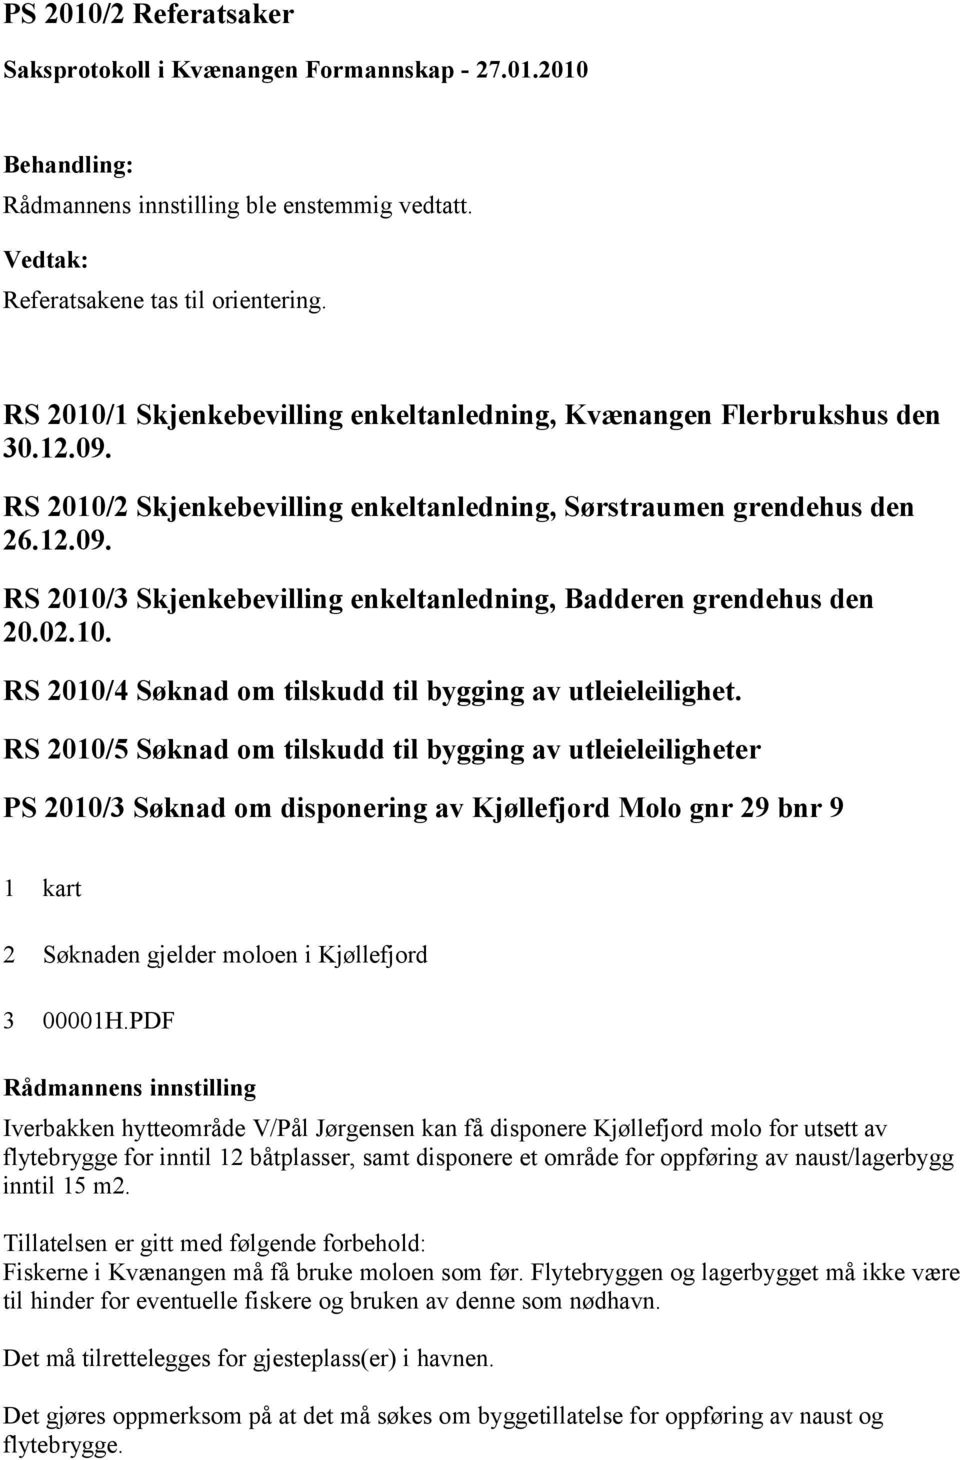 RS 2010/5 Søknad om tilskudd til bygging av utleieleiligheter PS 2010/3 Søknad om disponering av Kjøllefjord Molo gnr 29 bnr 9 1 kart 2 Søknaden gjelder moloen i Kjøllefjord 3 00001H.